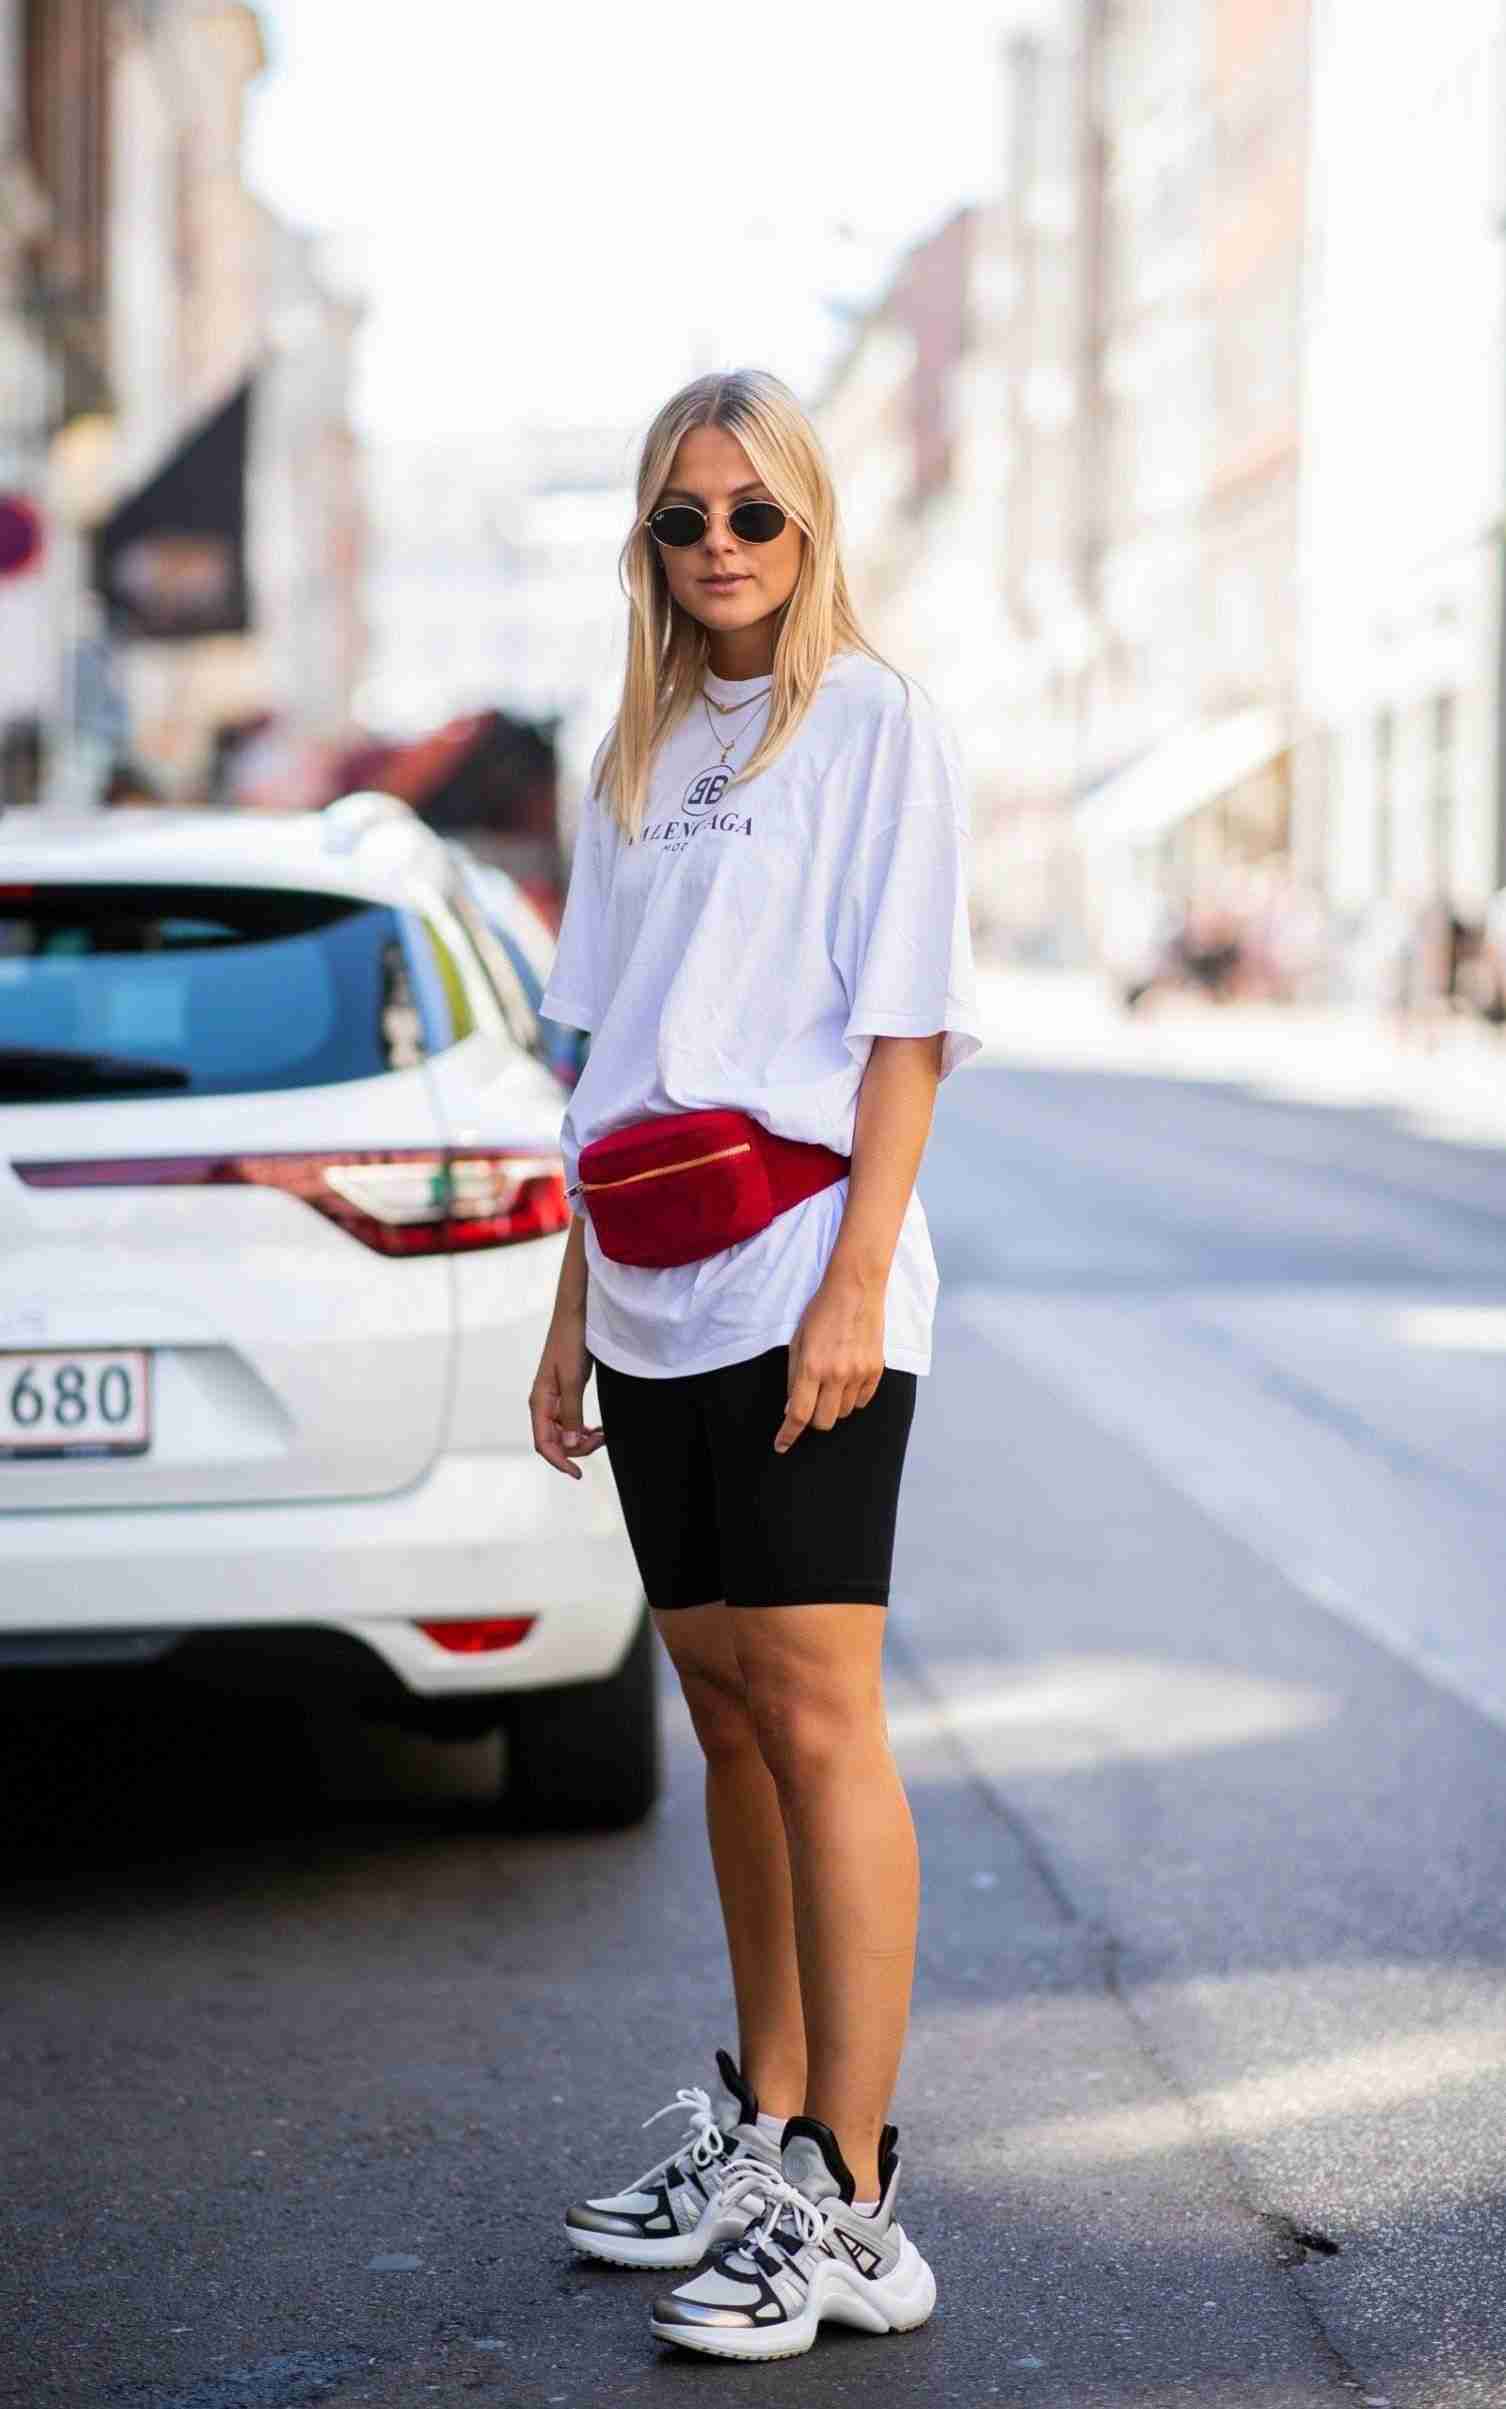 Radlerhose kombinieren T-Shirt Gurteltasche rot Leder Sneakers Sonnenbrille rund Modetrends